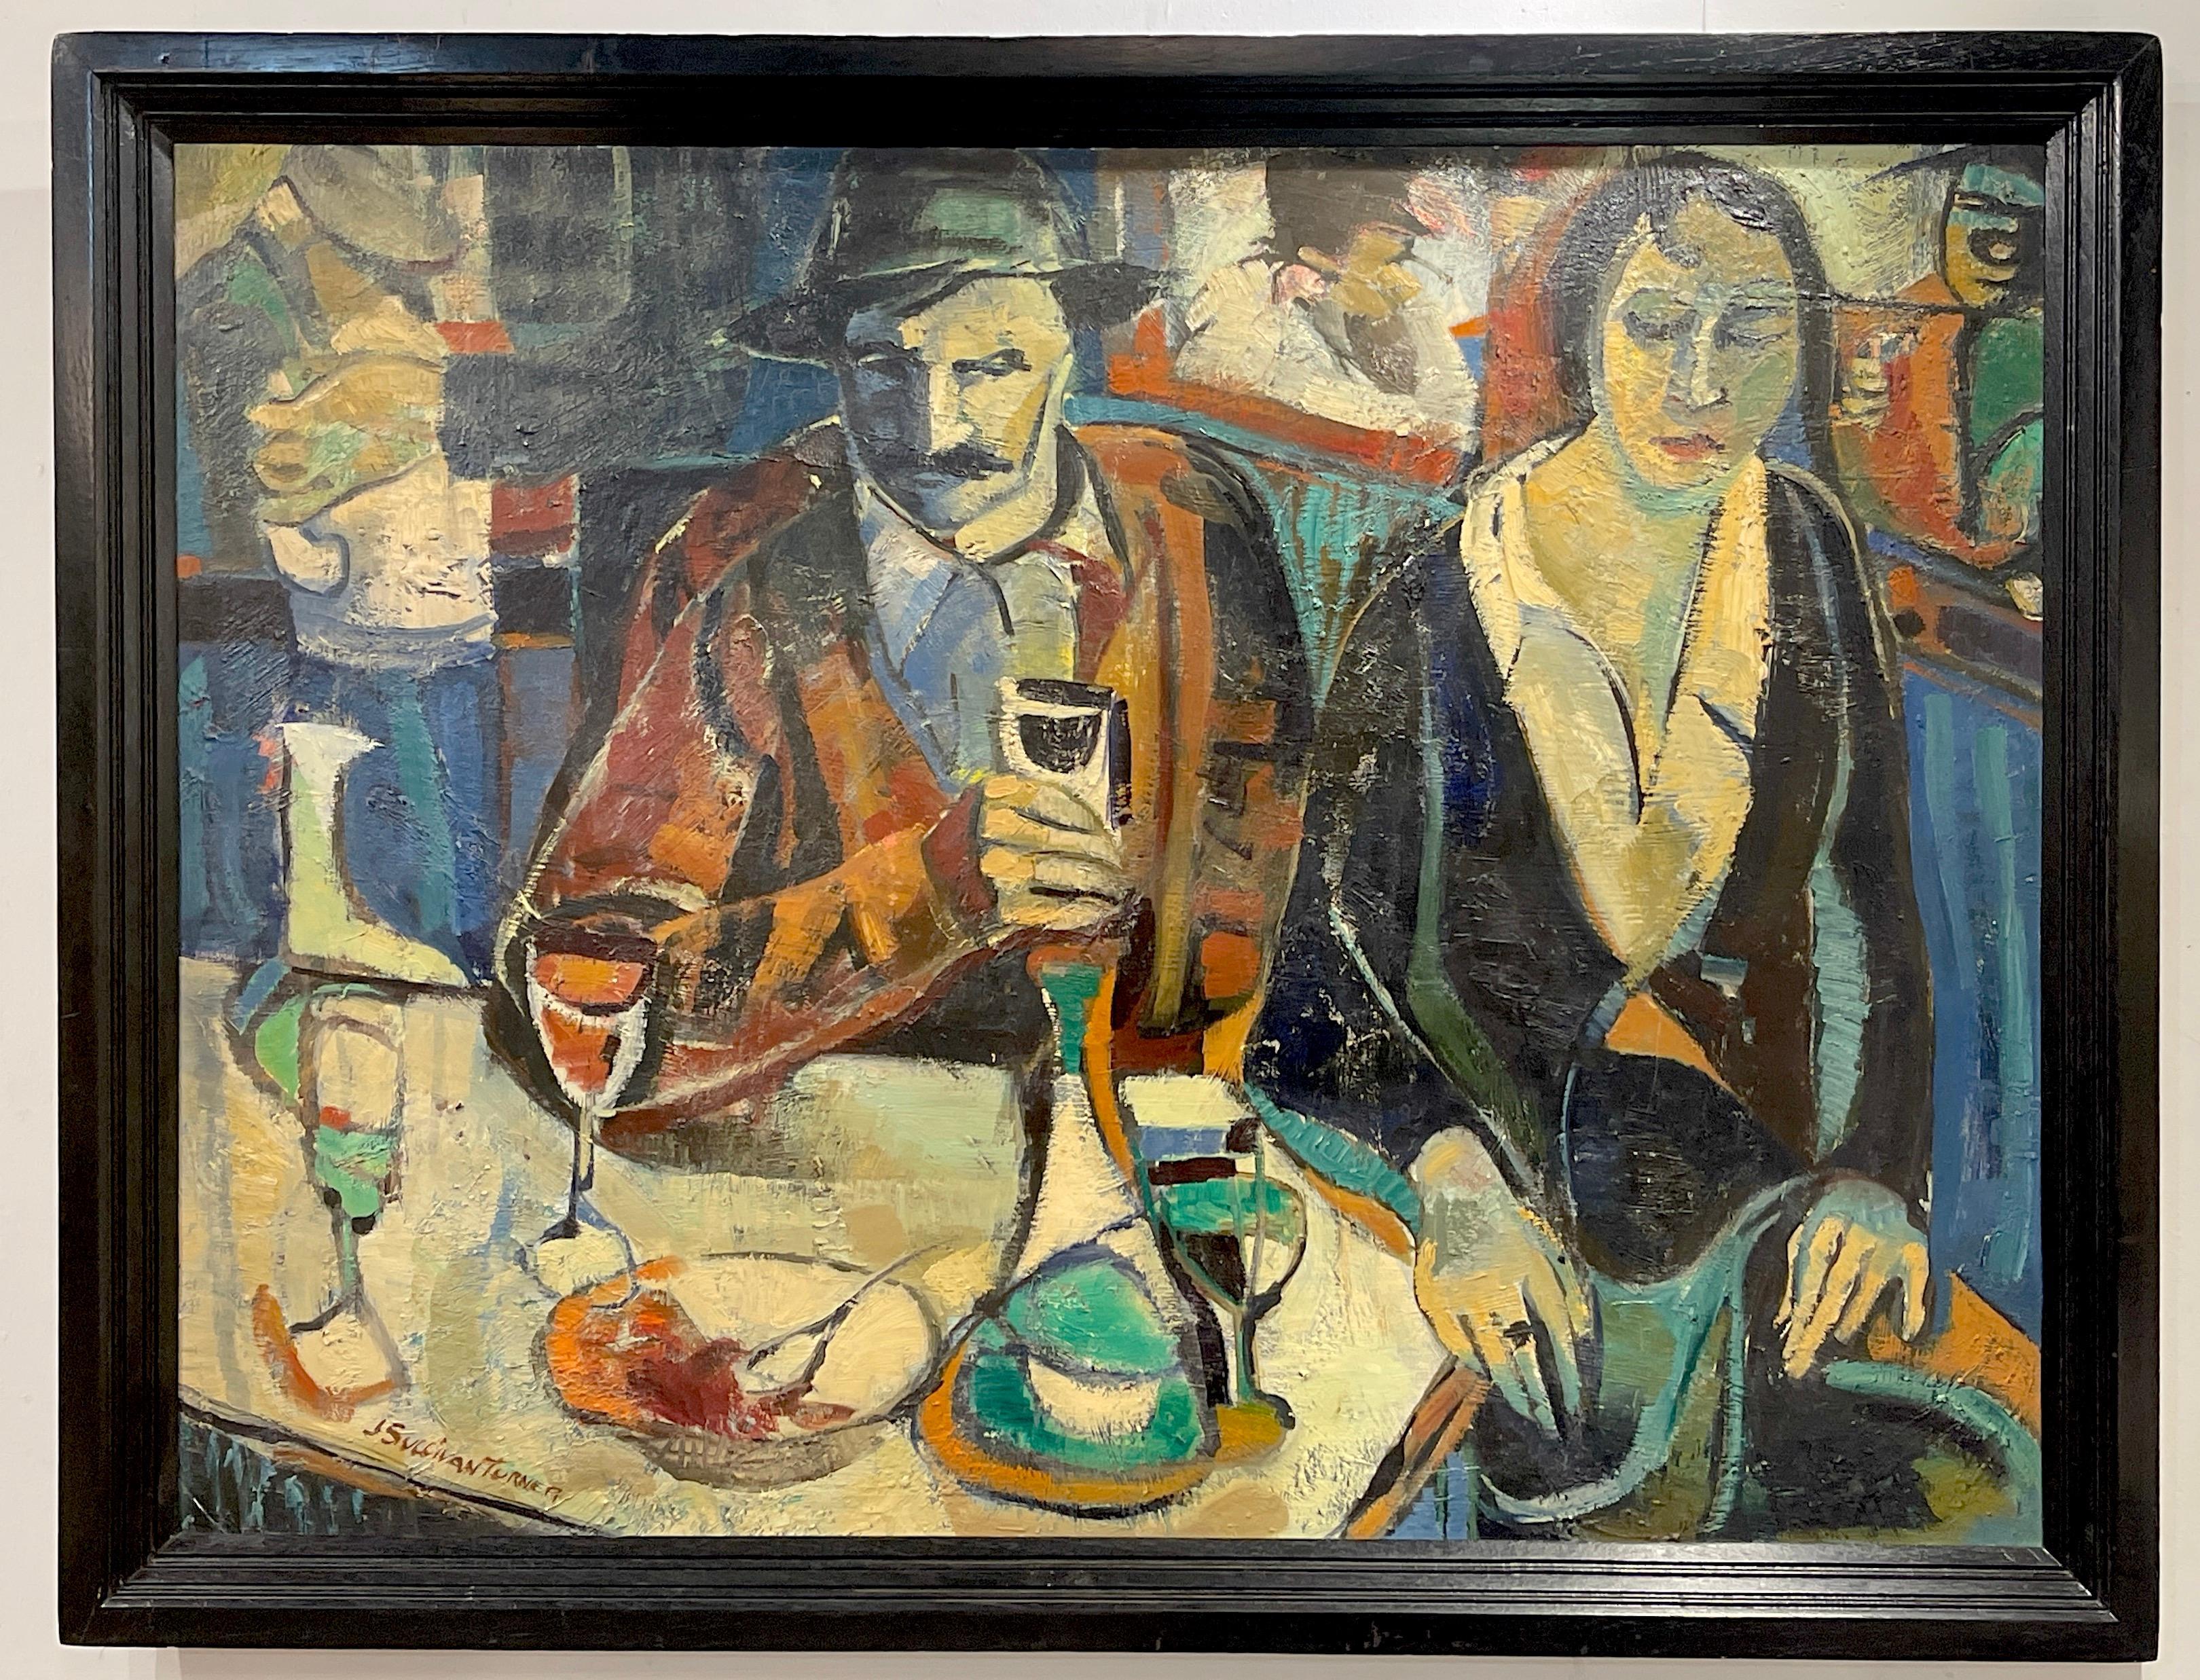 la Banquette par Janet Sullivan Turner
Janet Sullivan Turner (américaine, née en 1935) 
Une grande peinture cubiste/moderne intrigante d'un couple assis dans un café européen animé. 
Huile sur carton
Signé en bas à gauche 